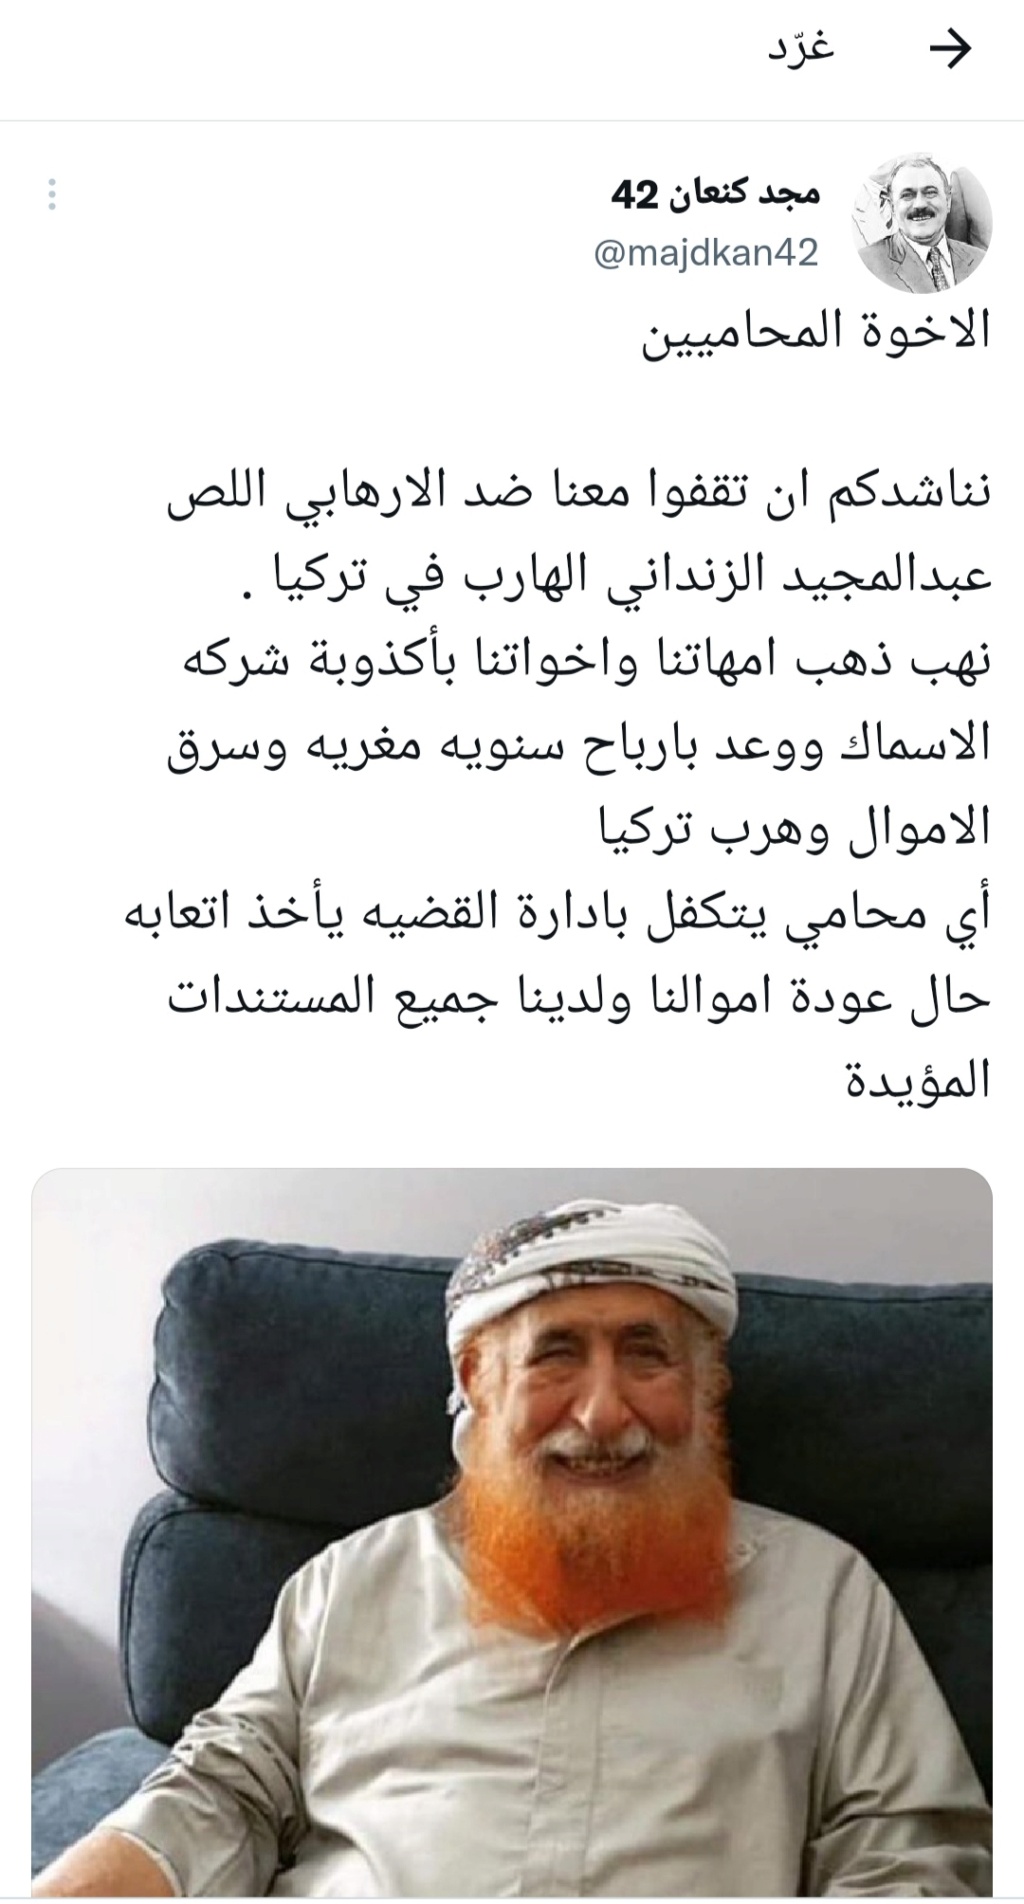 المدعو مجد كنعان 42 يغرد في تويتر برفع دعوة قضائية على الشيخ الزنداني!!! Img_ee10